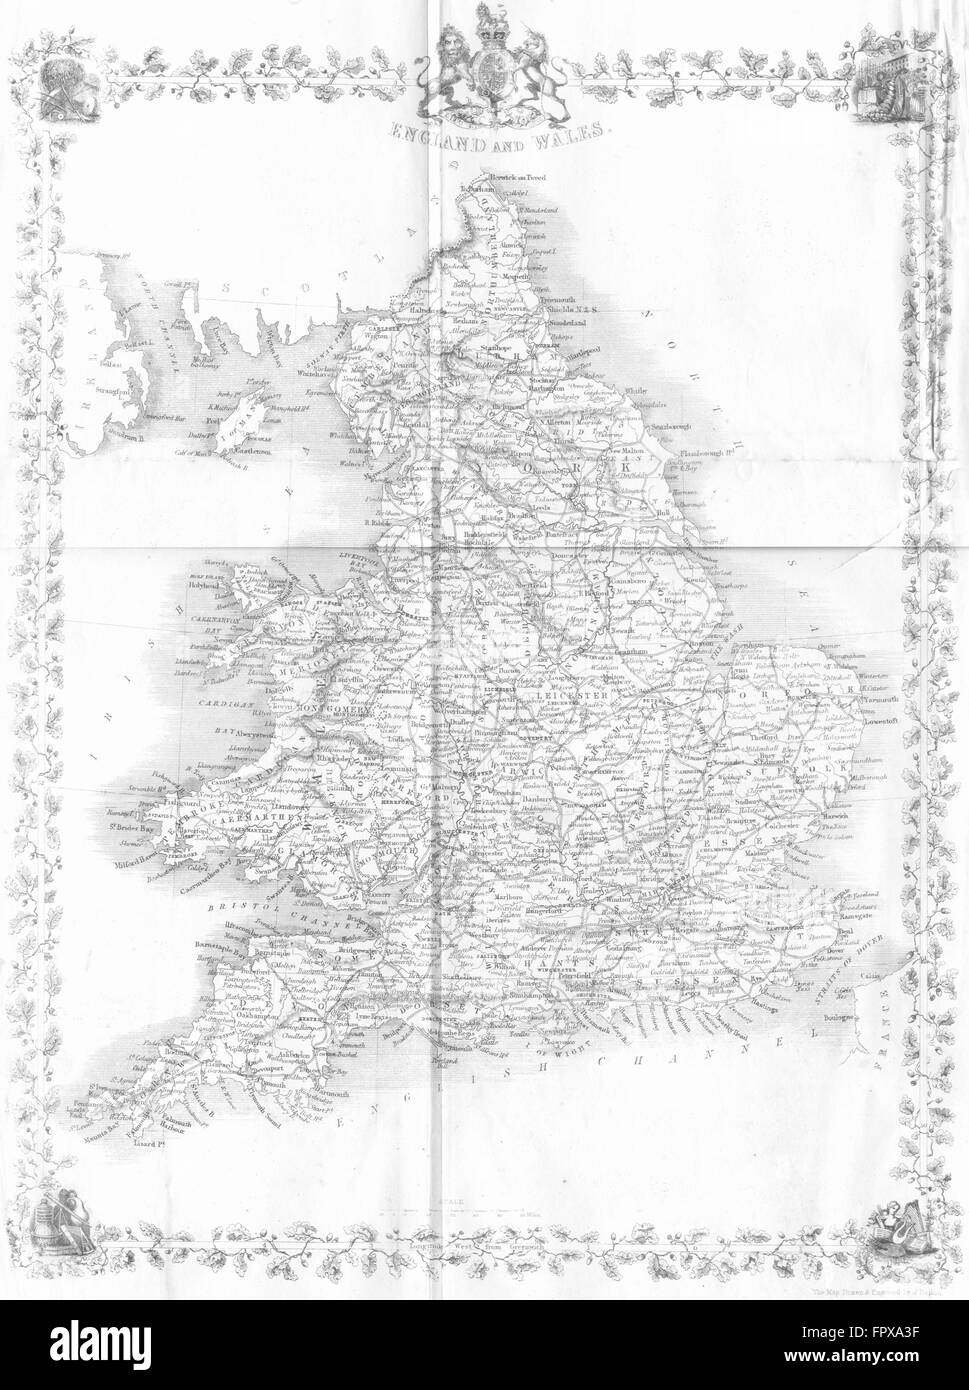 UK: England Wales: Rapkin, 1850 antique map Stock Photo